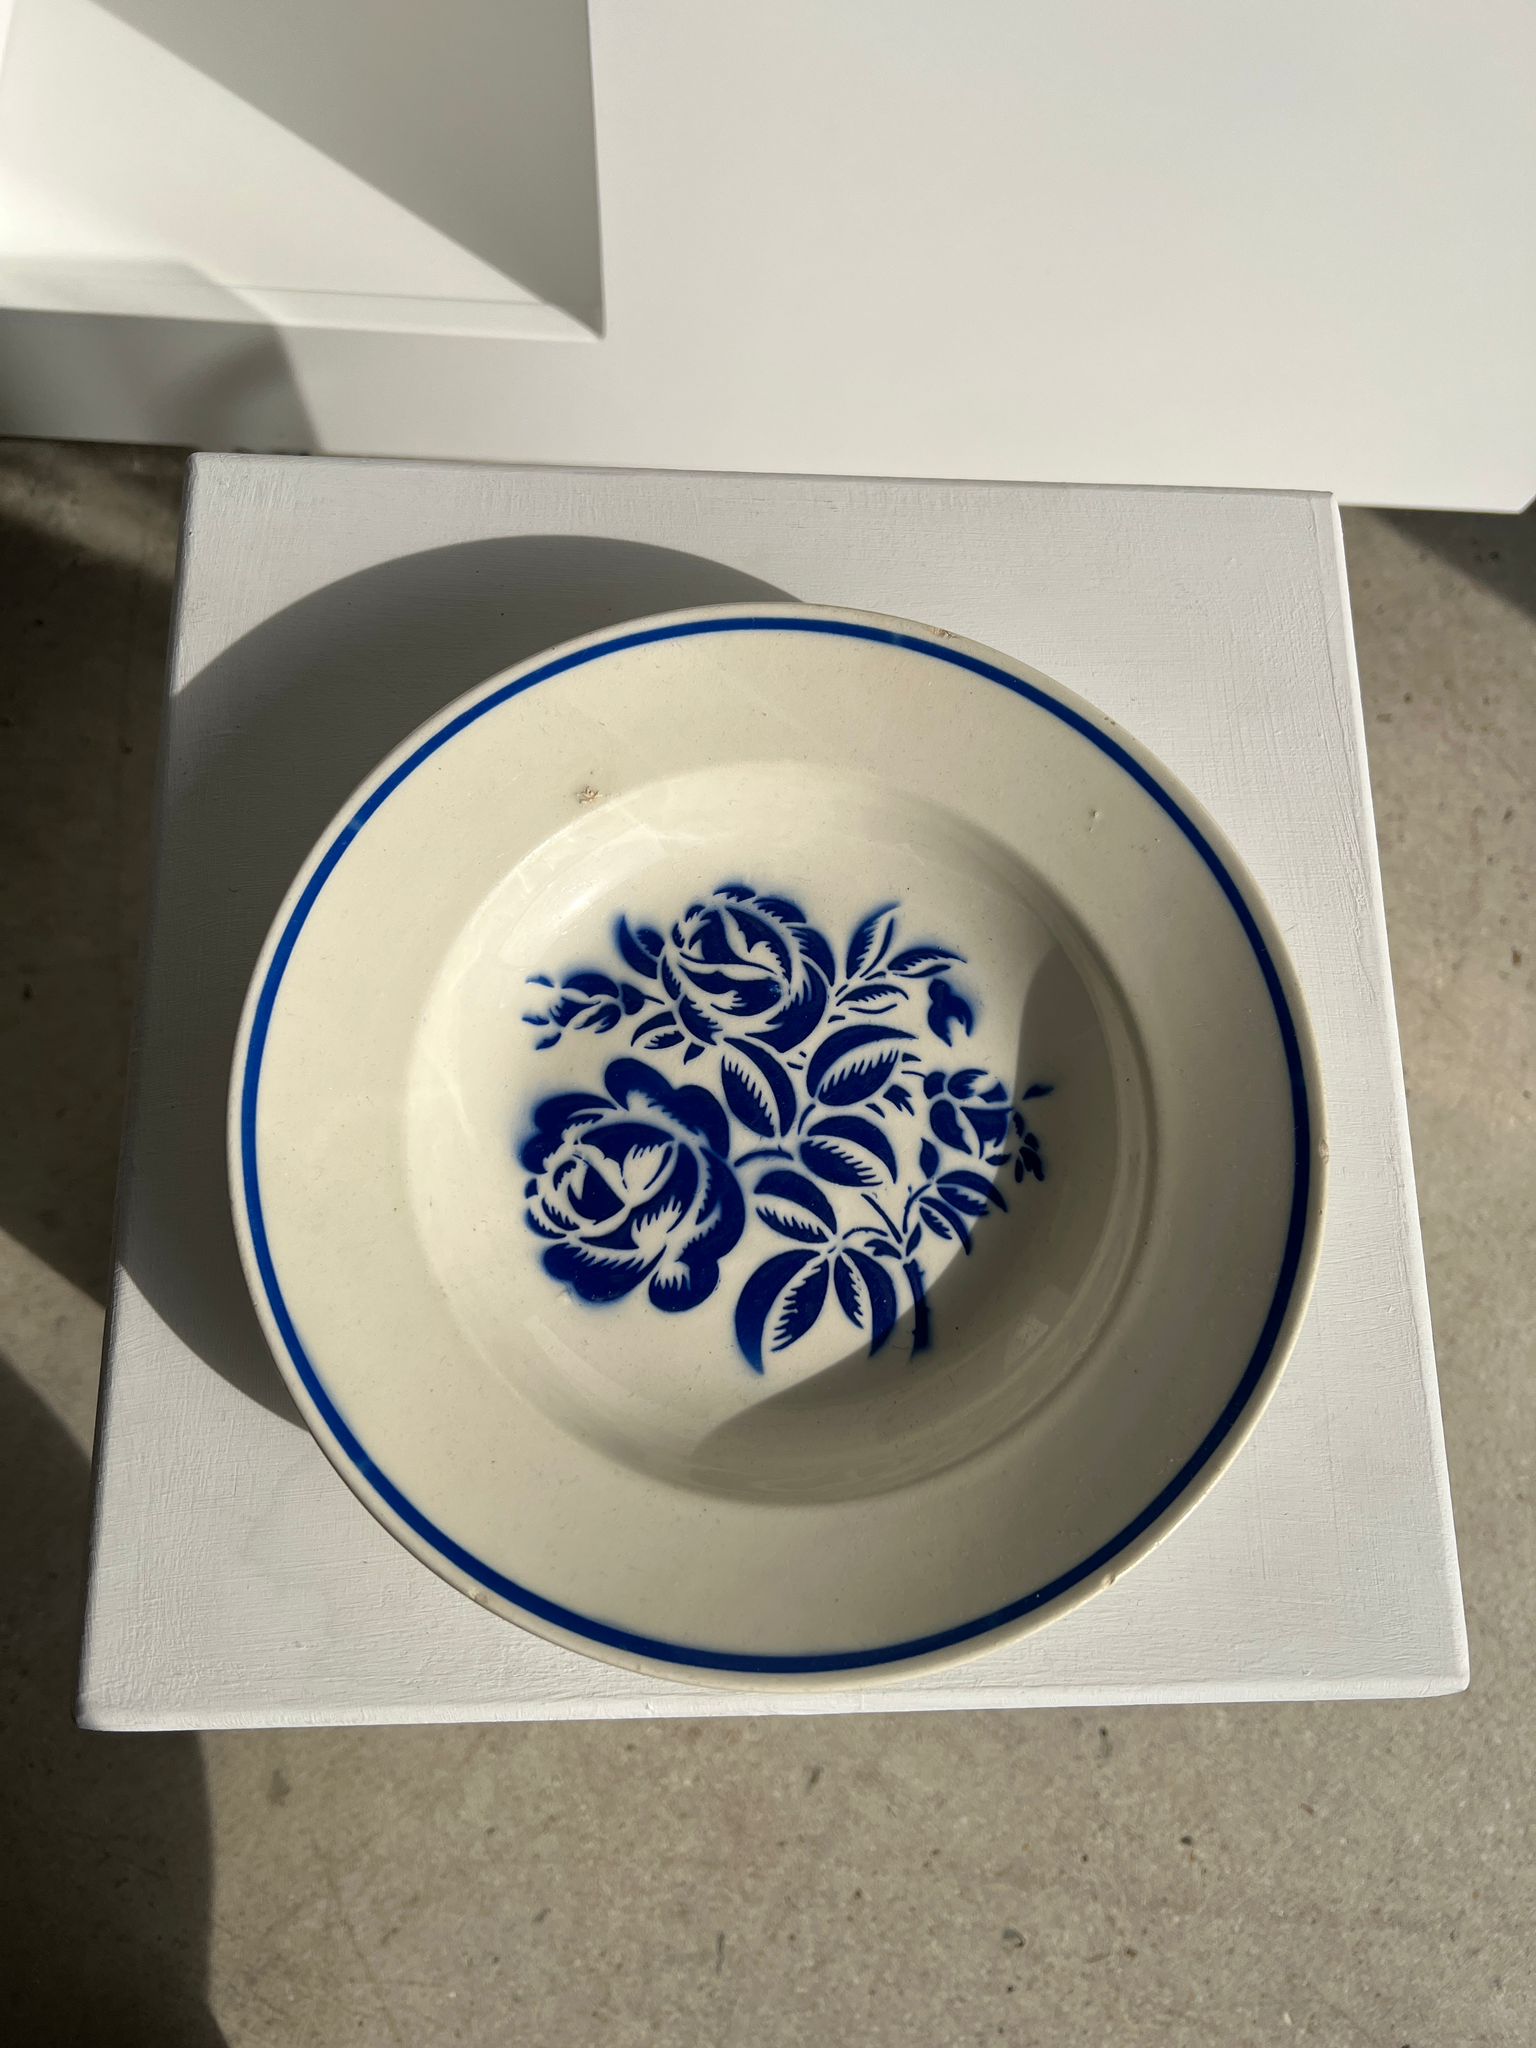 Petite assiette creuse Nadia Lunéville décor floral stylisé bleu